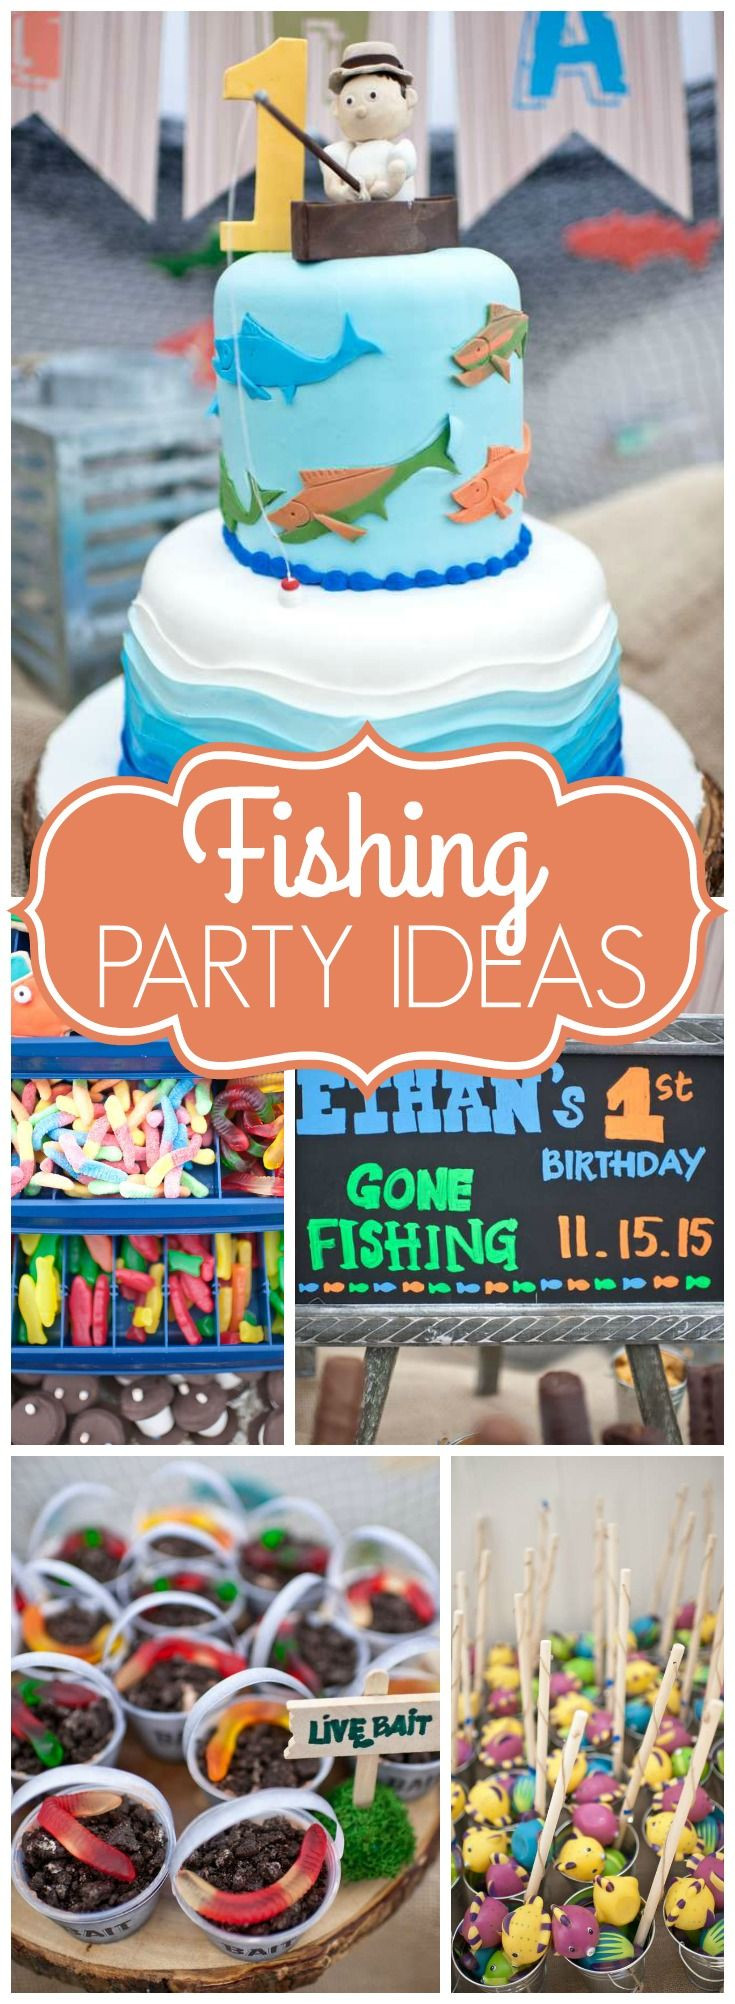 Toddler Boy Birthday Gift Ideas
 Gone Fishing Birthday "Ethan s Gone Fishing 1st Birthday